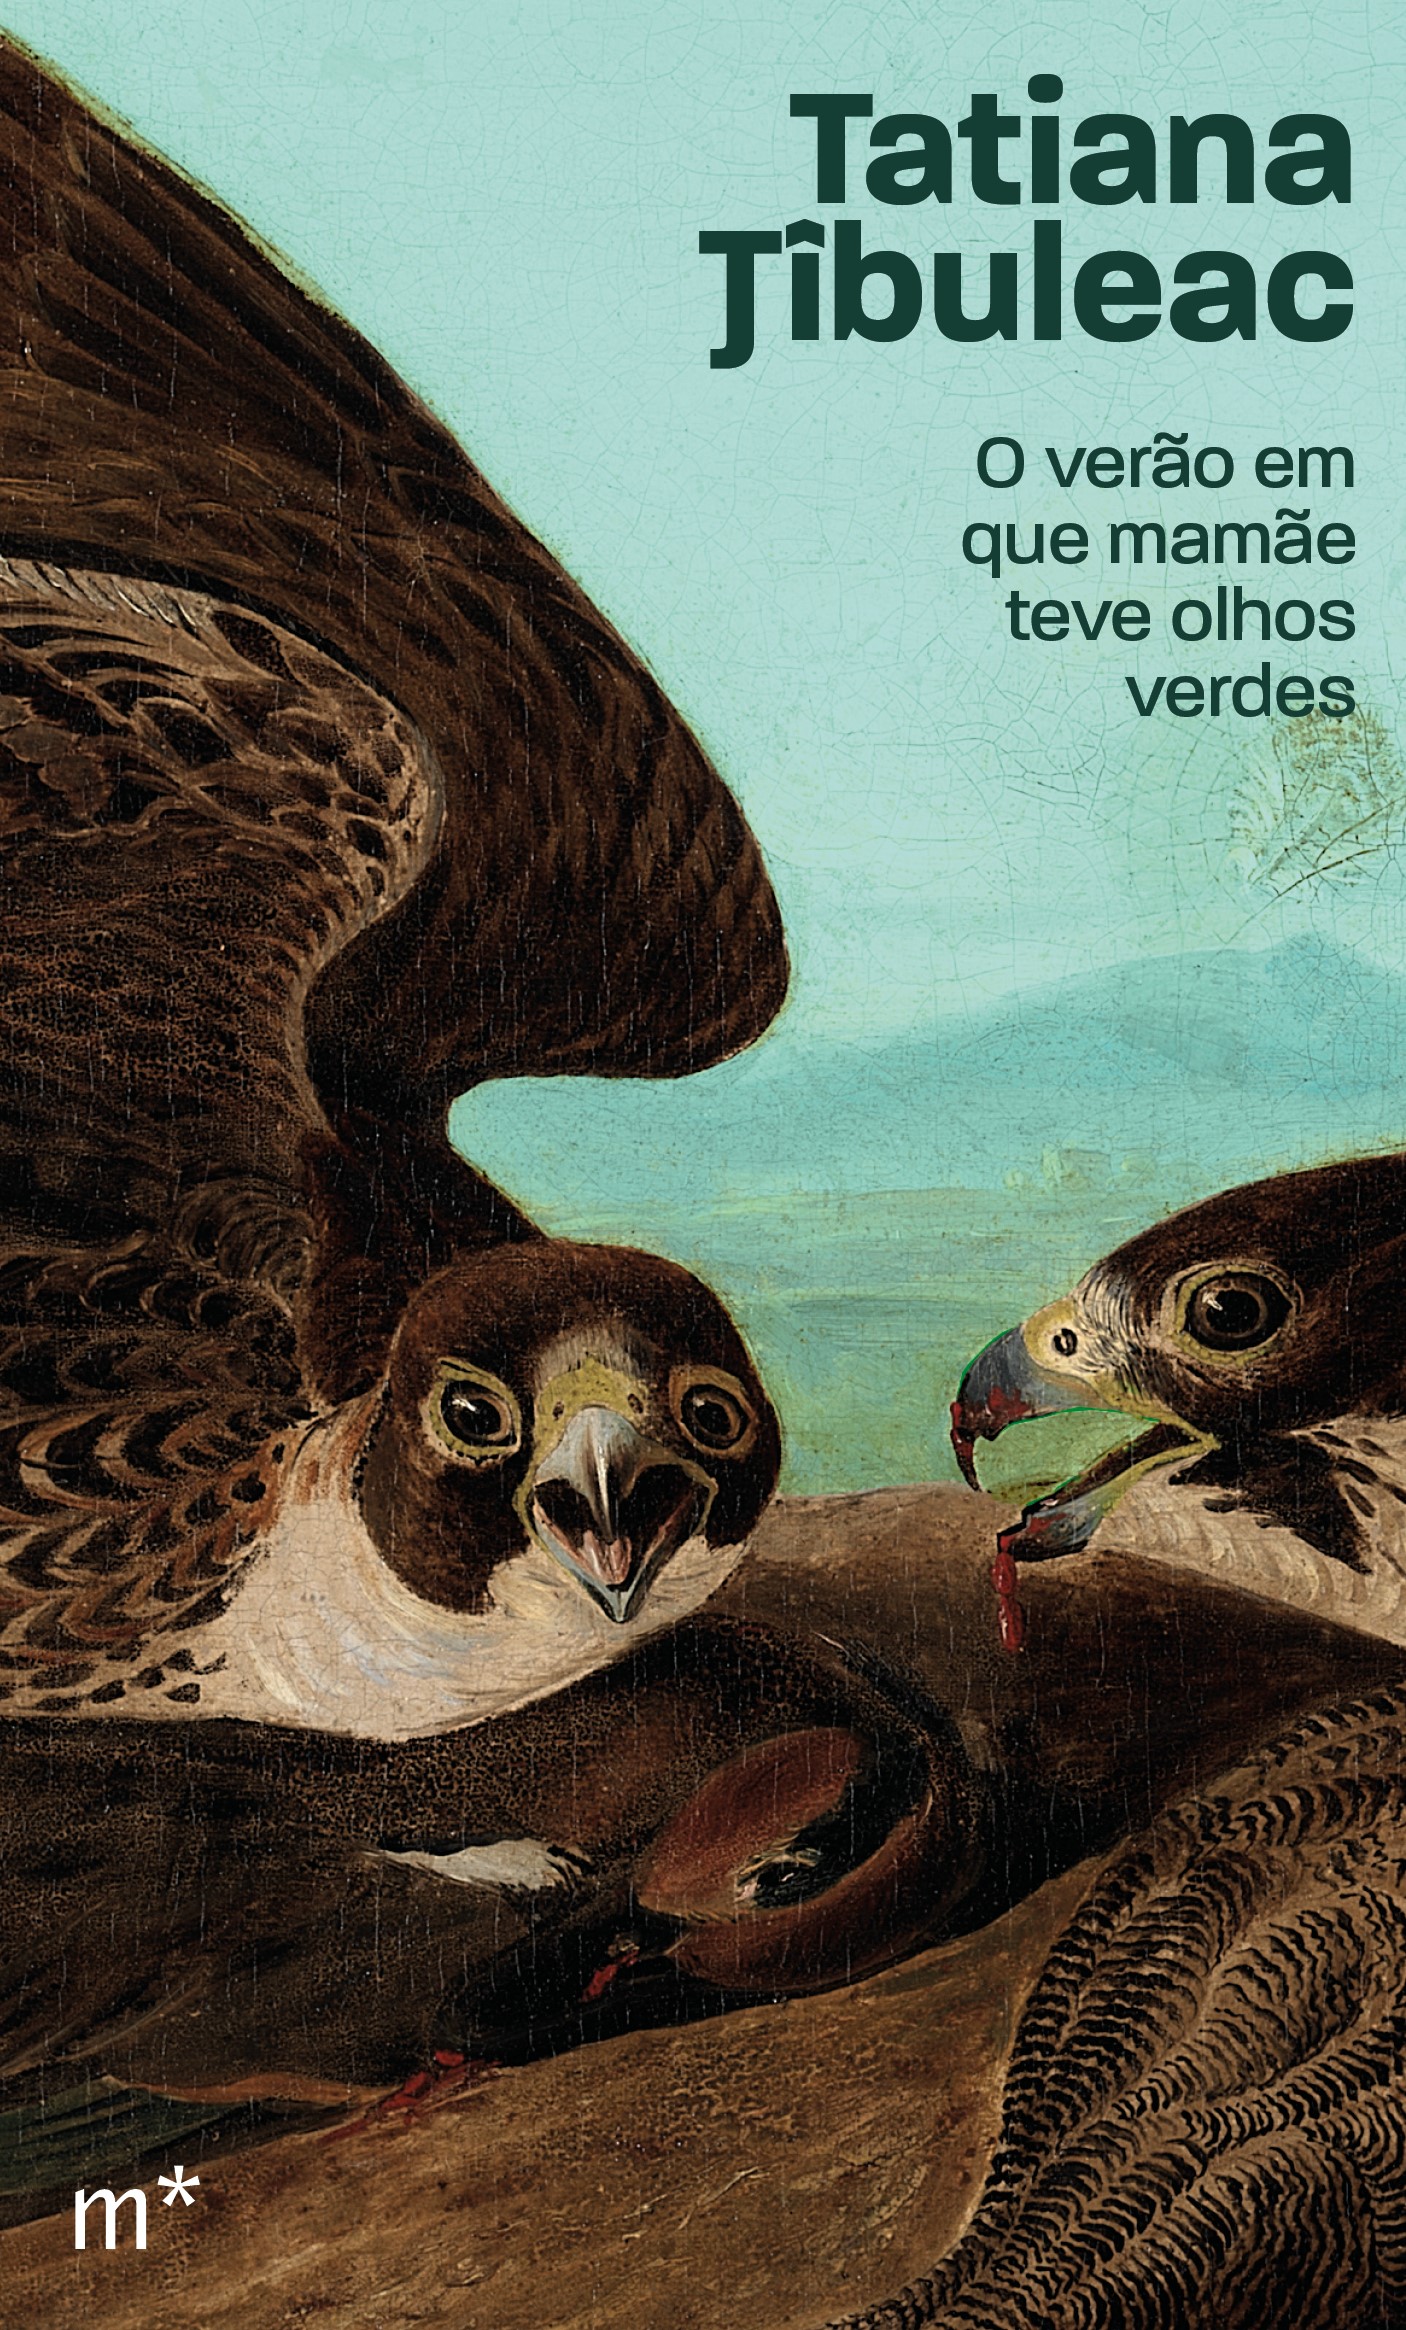 Tatiana Tîbuleac: O verão em mamãe teve olhos verdes (Paperback, Português language, Mundaréu)